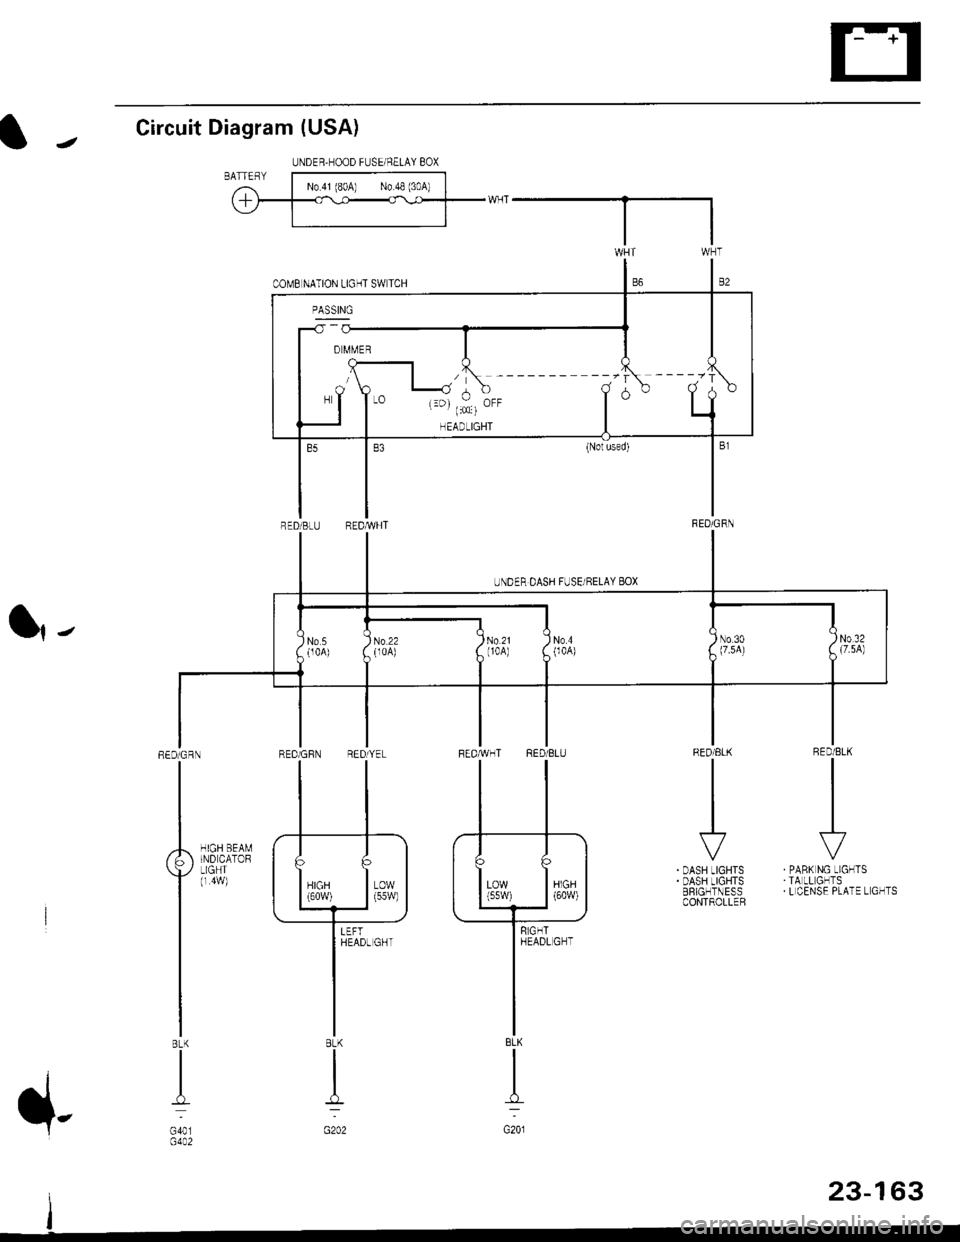 HONDA CIVIC 1996 6.G Workshop Manual Circuit Diagram (USA)
l|-
RED/BLK
II
I
\?
PABK NG LIGHTSTA LL GHTSL CENSE PLATE L GHTS
RED/ELK
III
I
r
DASH LIGHTSDASH LIGHTSERIGHTNESSCONTROLLER
HIGH BEAMIND CATORLIGHT(r 4w)
REDiGRN
I
BLK
I
G401G4A